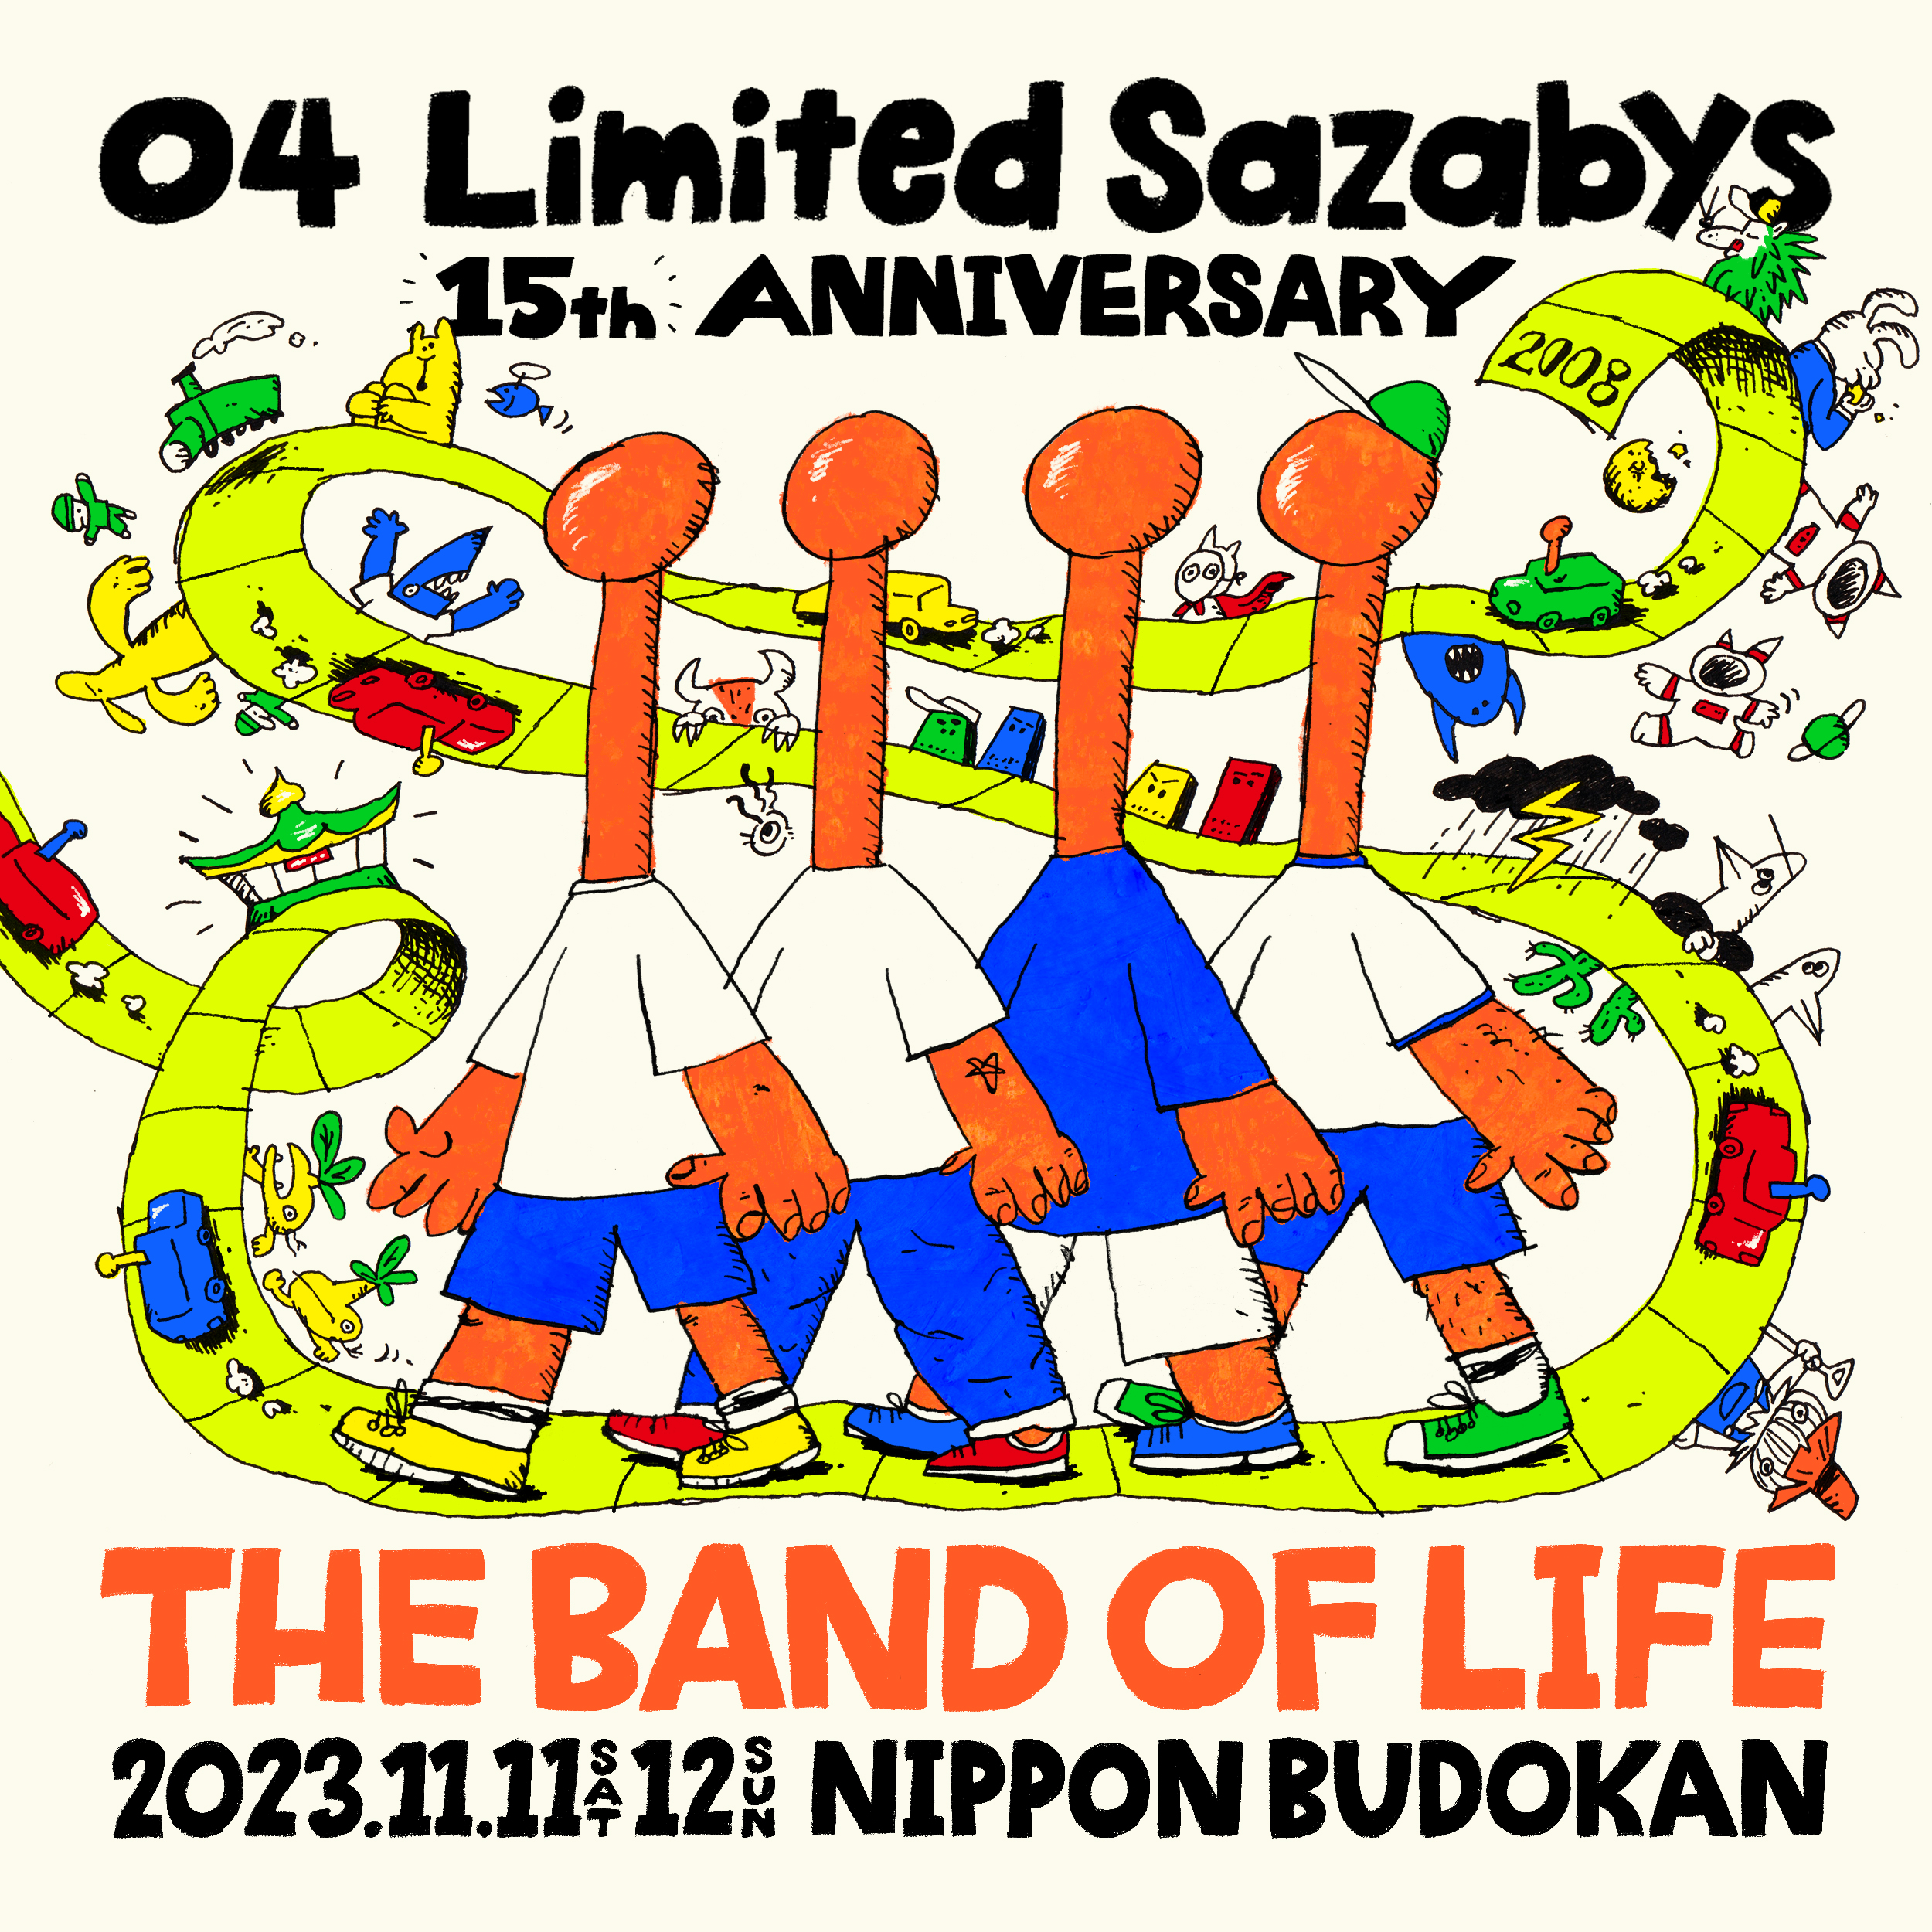 【東京】04 Limited Sazabys 15th Anniversary 『THE BAND OF LIFE』 (日本武道館) ※ワンマン